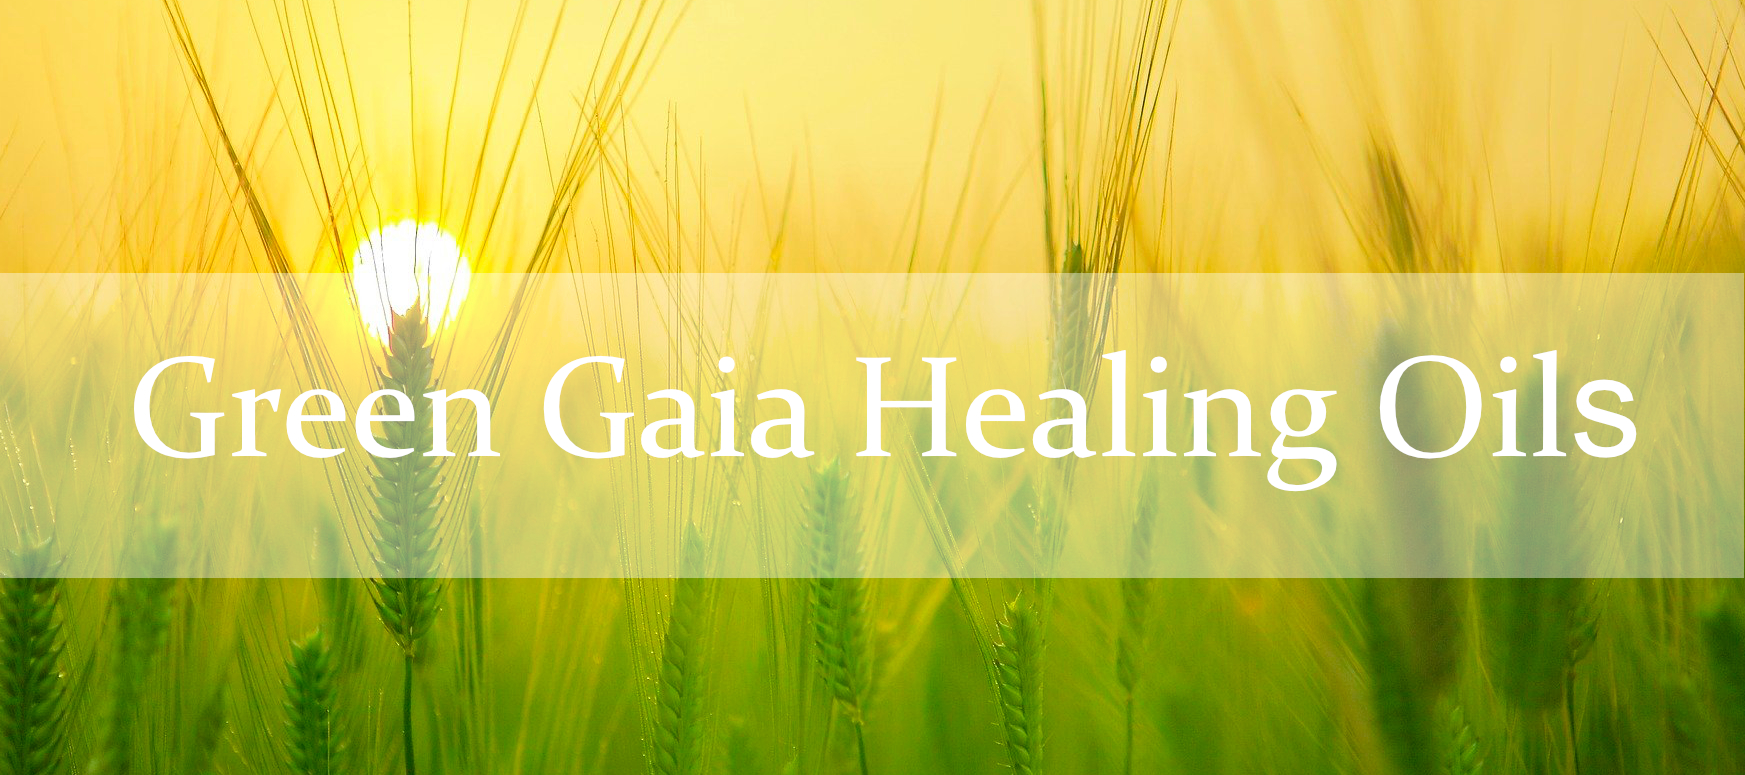 Slideshowbild Green Gaia Healing Oils